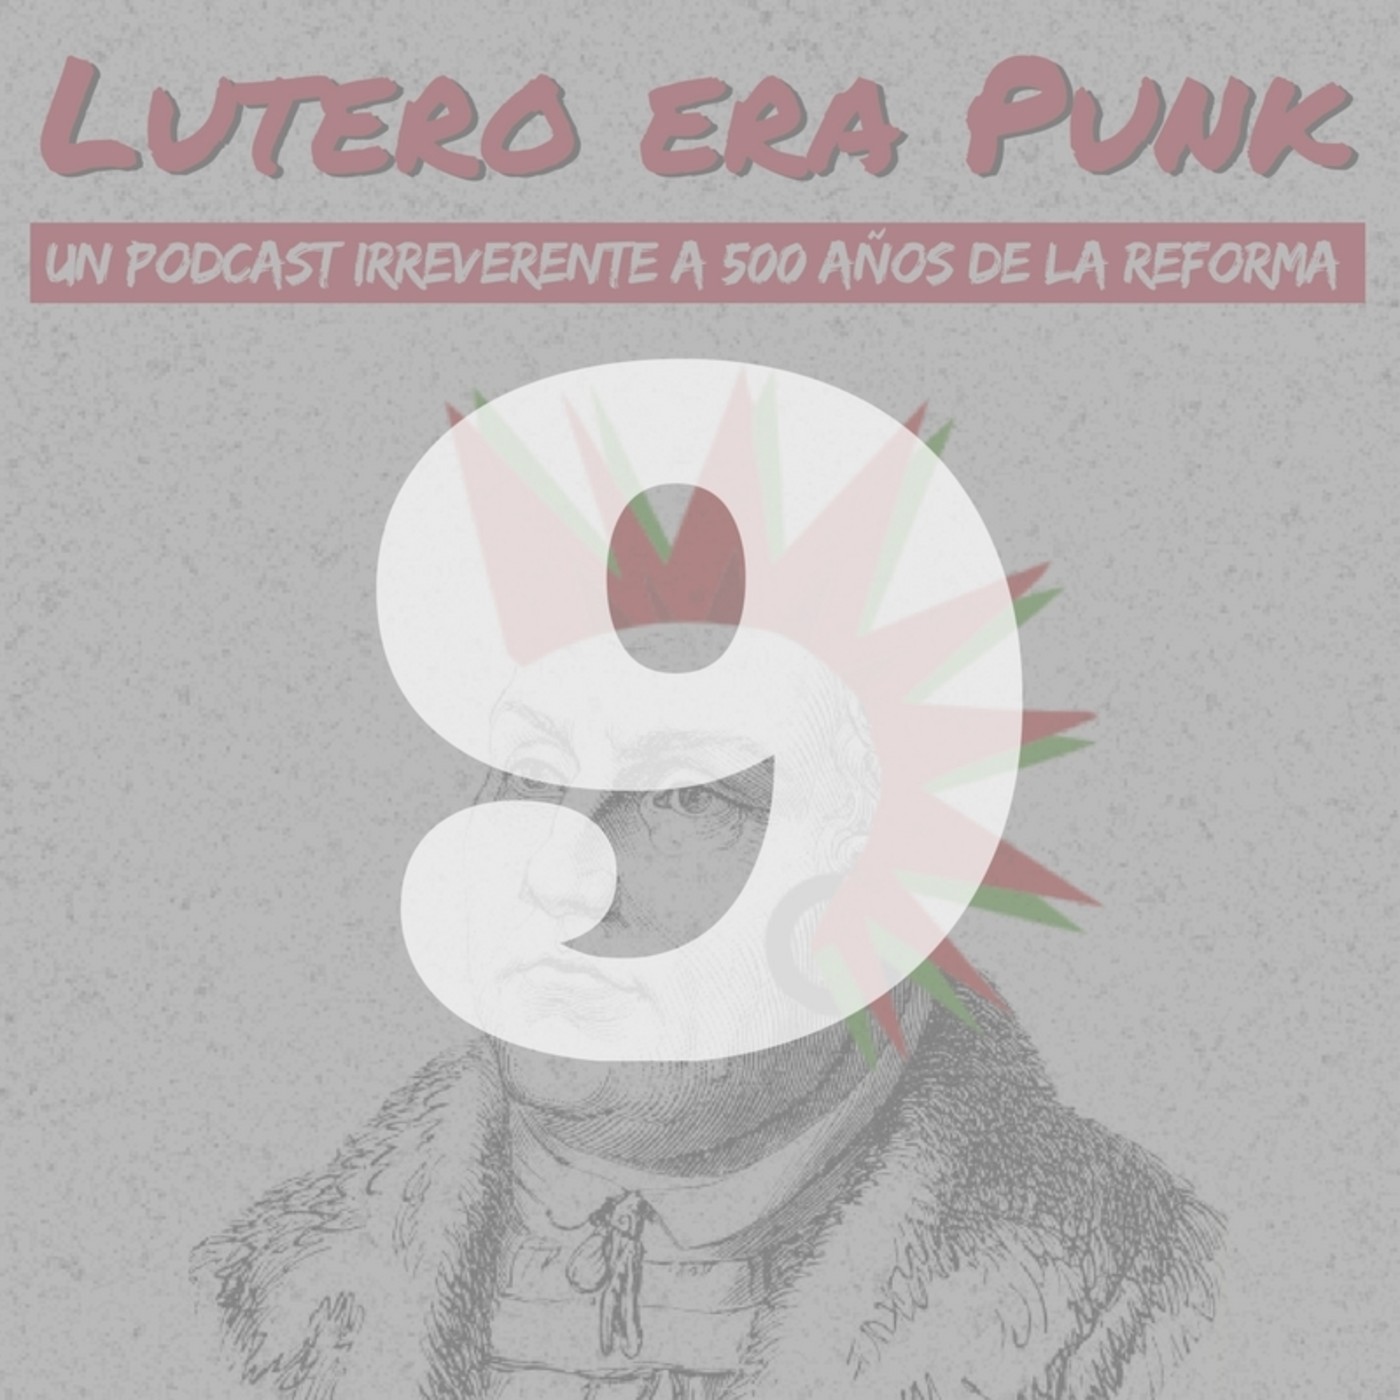 Lutero era punk | Capítulo 9